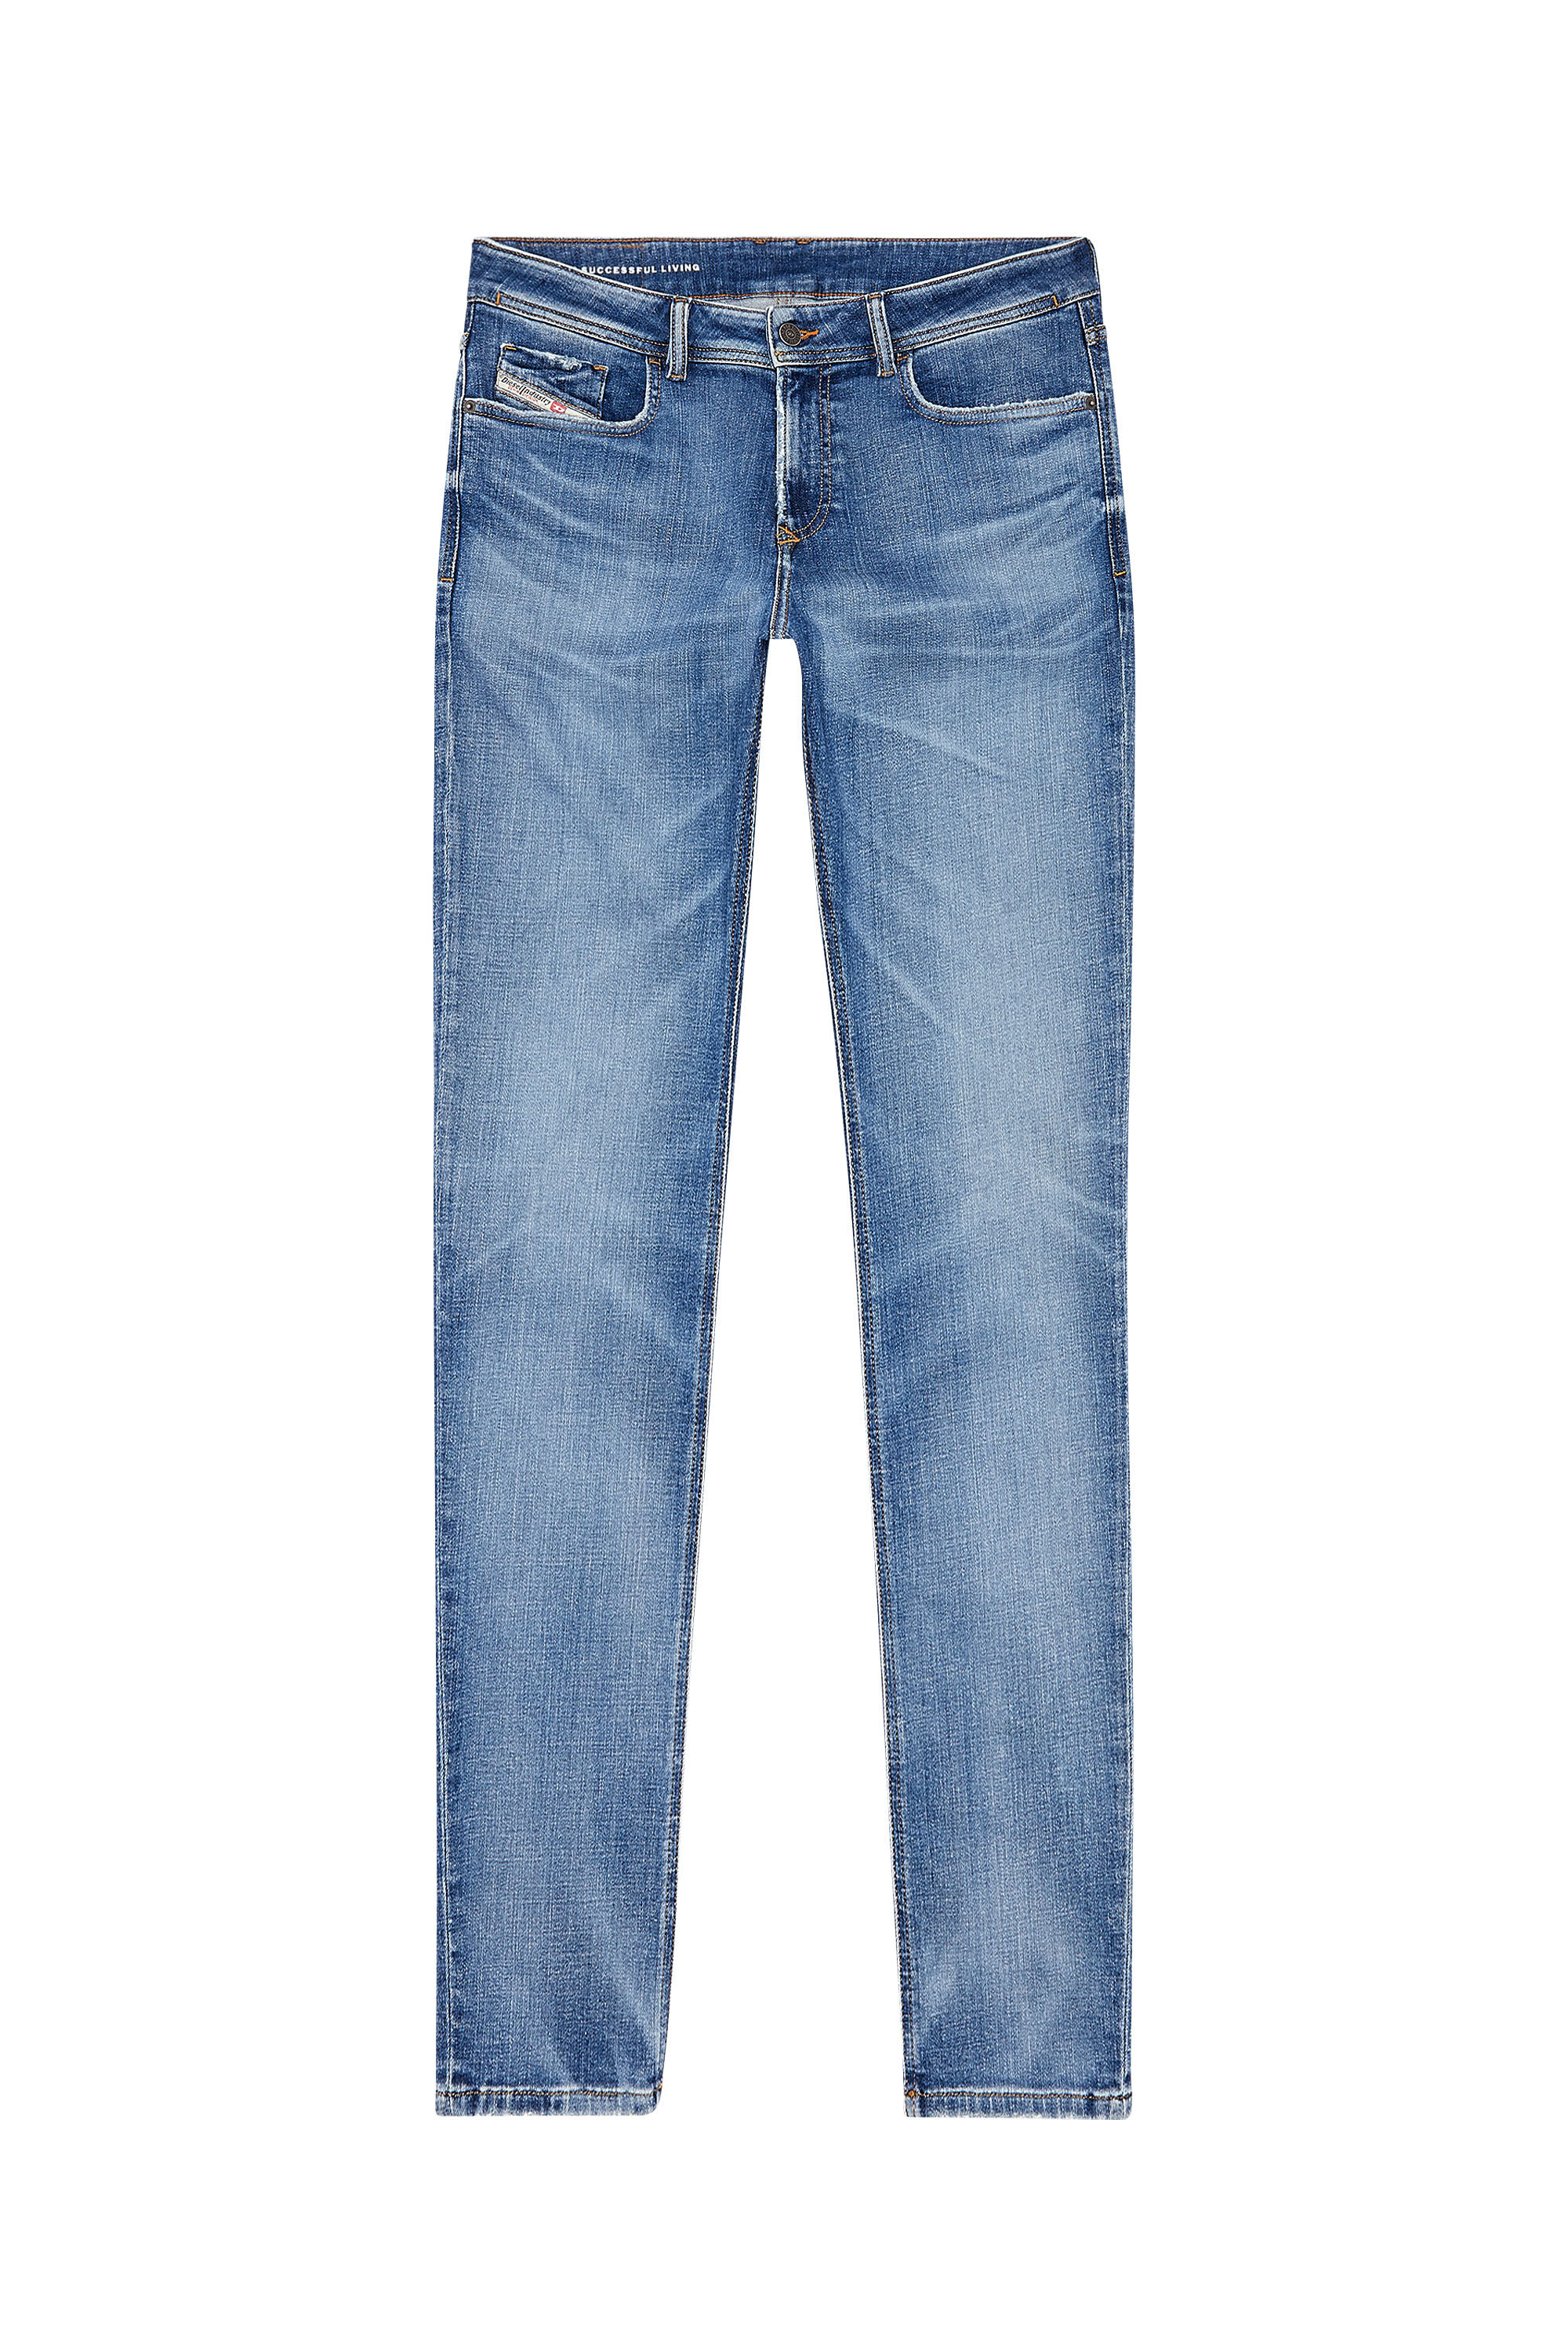 Diesel - Skinny Jeans 1979 Sleenker 09H68, Medium blue - Image 2